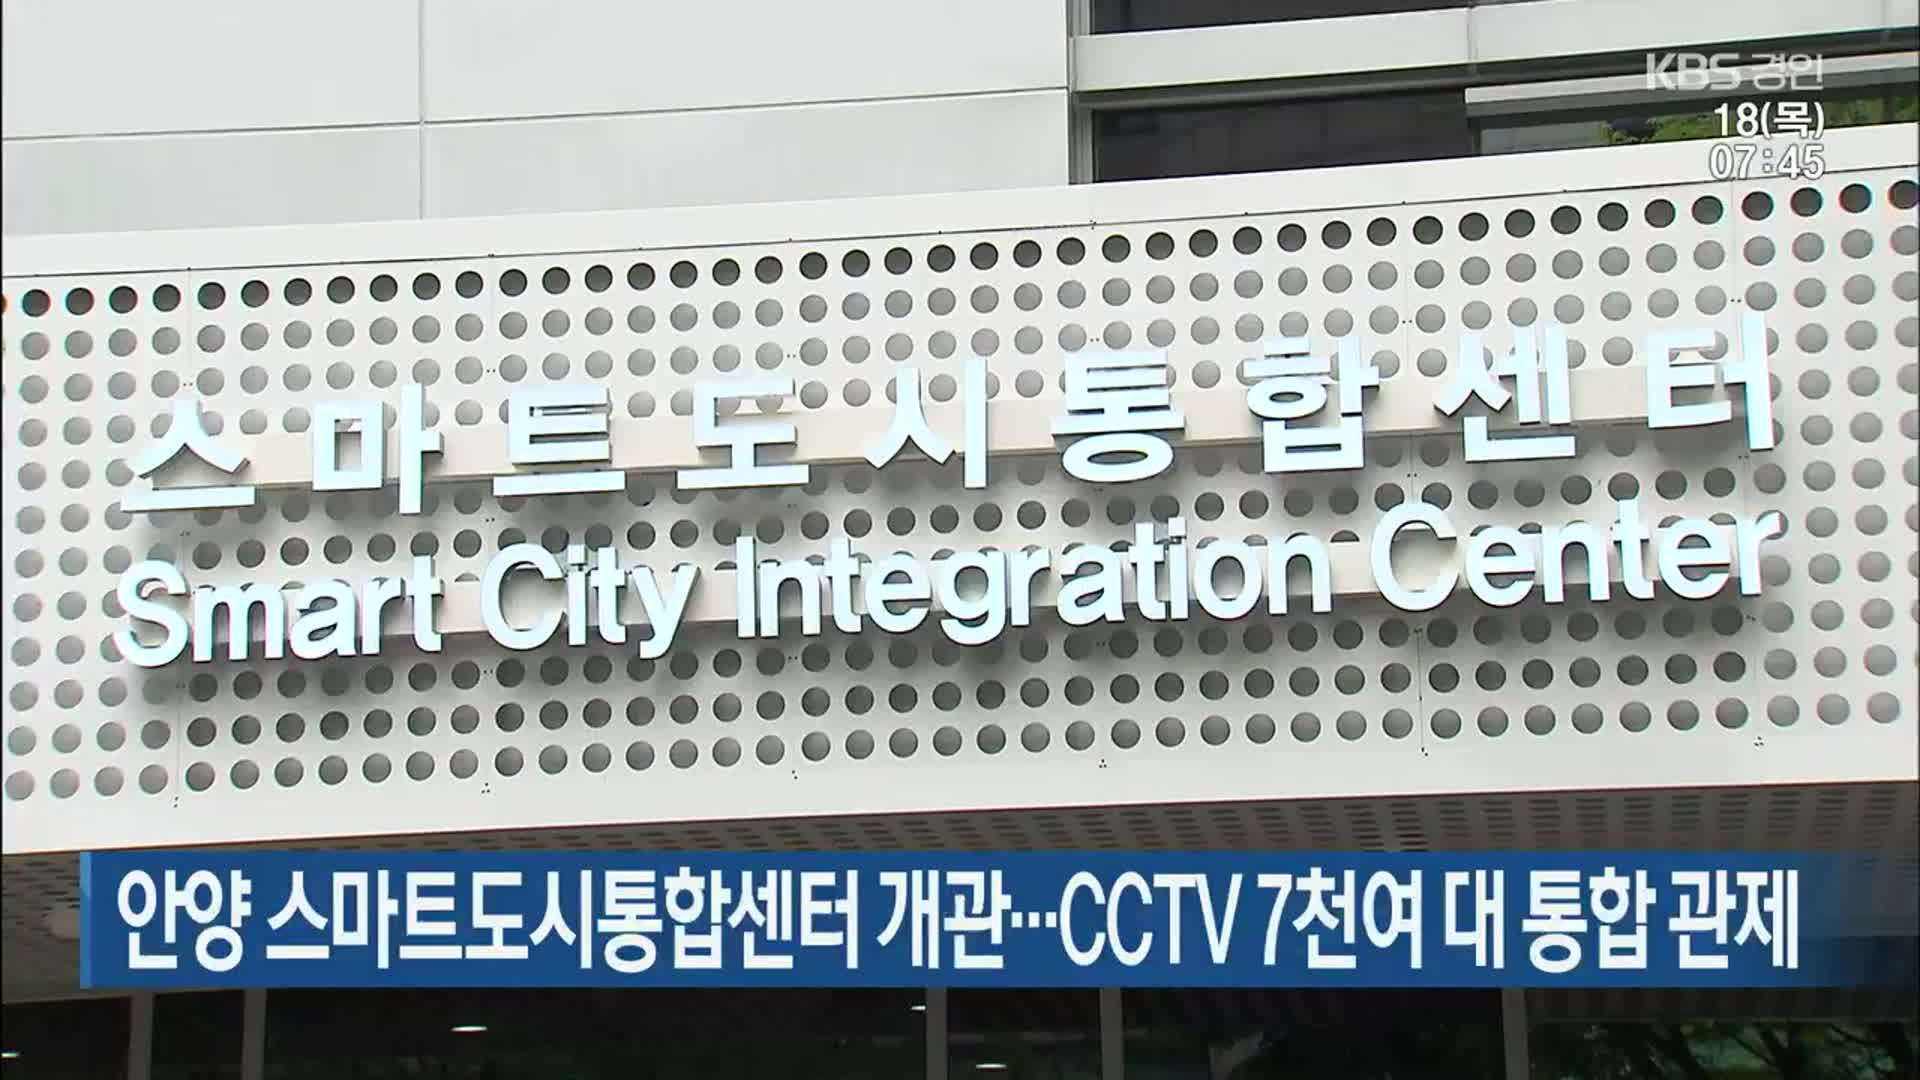 안양 스마트도시통합센터 개관…CCTV 7천여 대 통합 관제